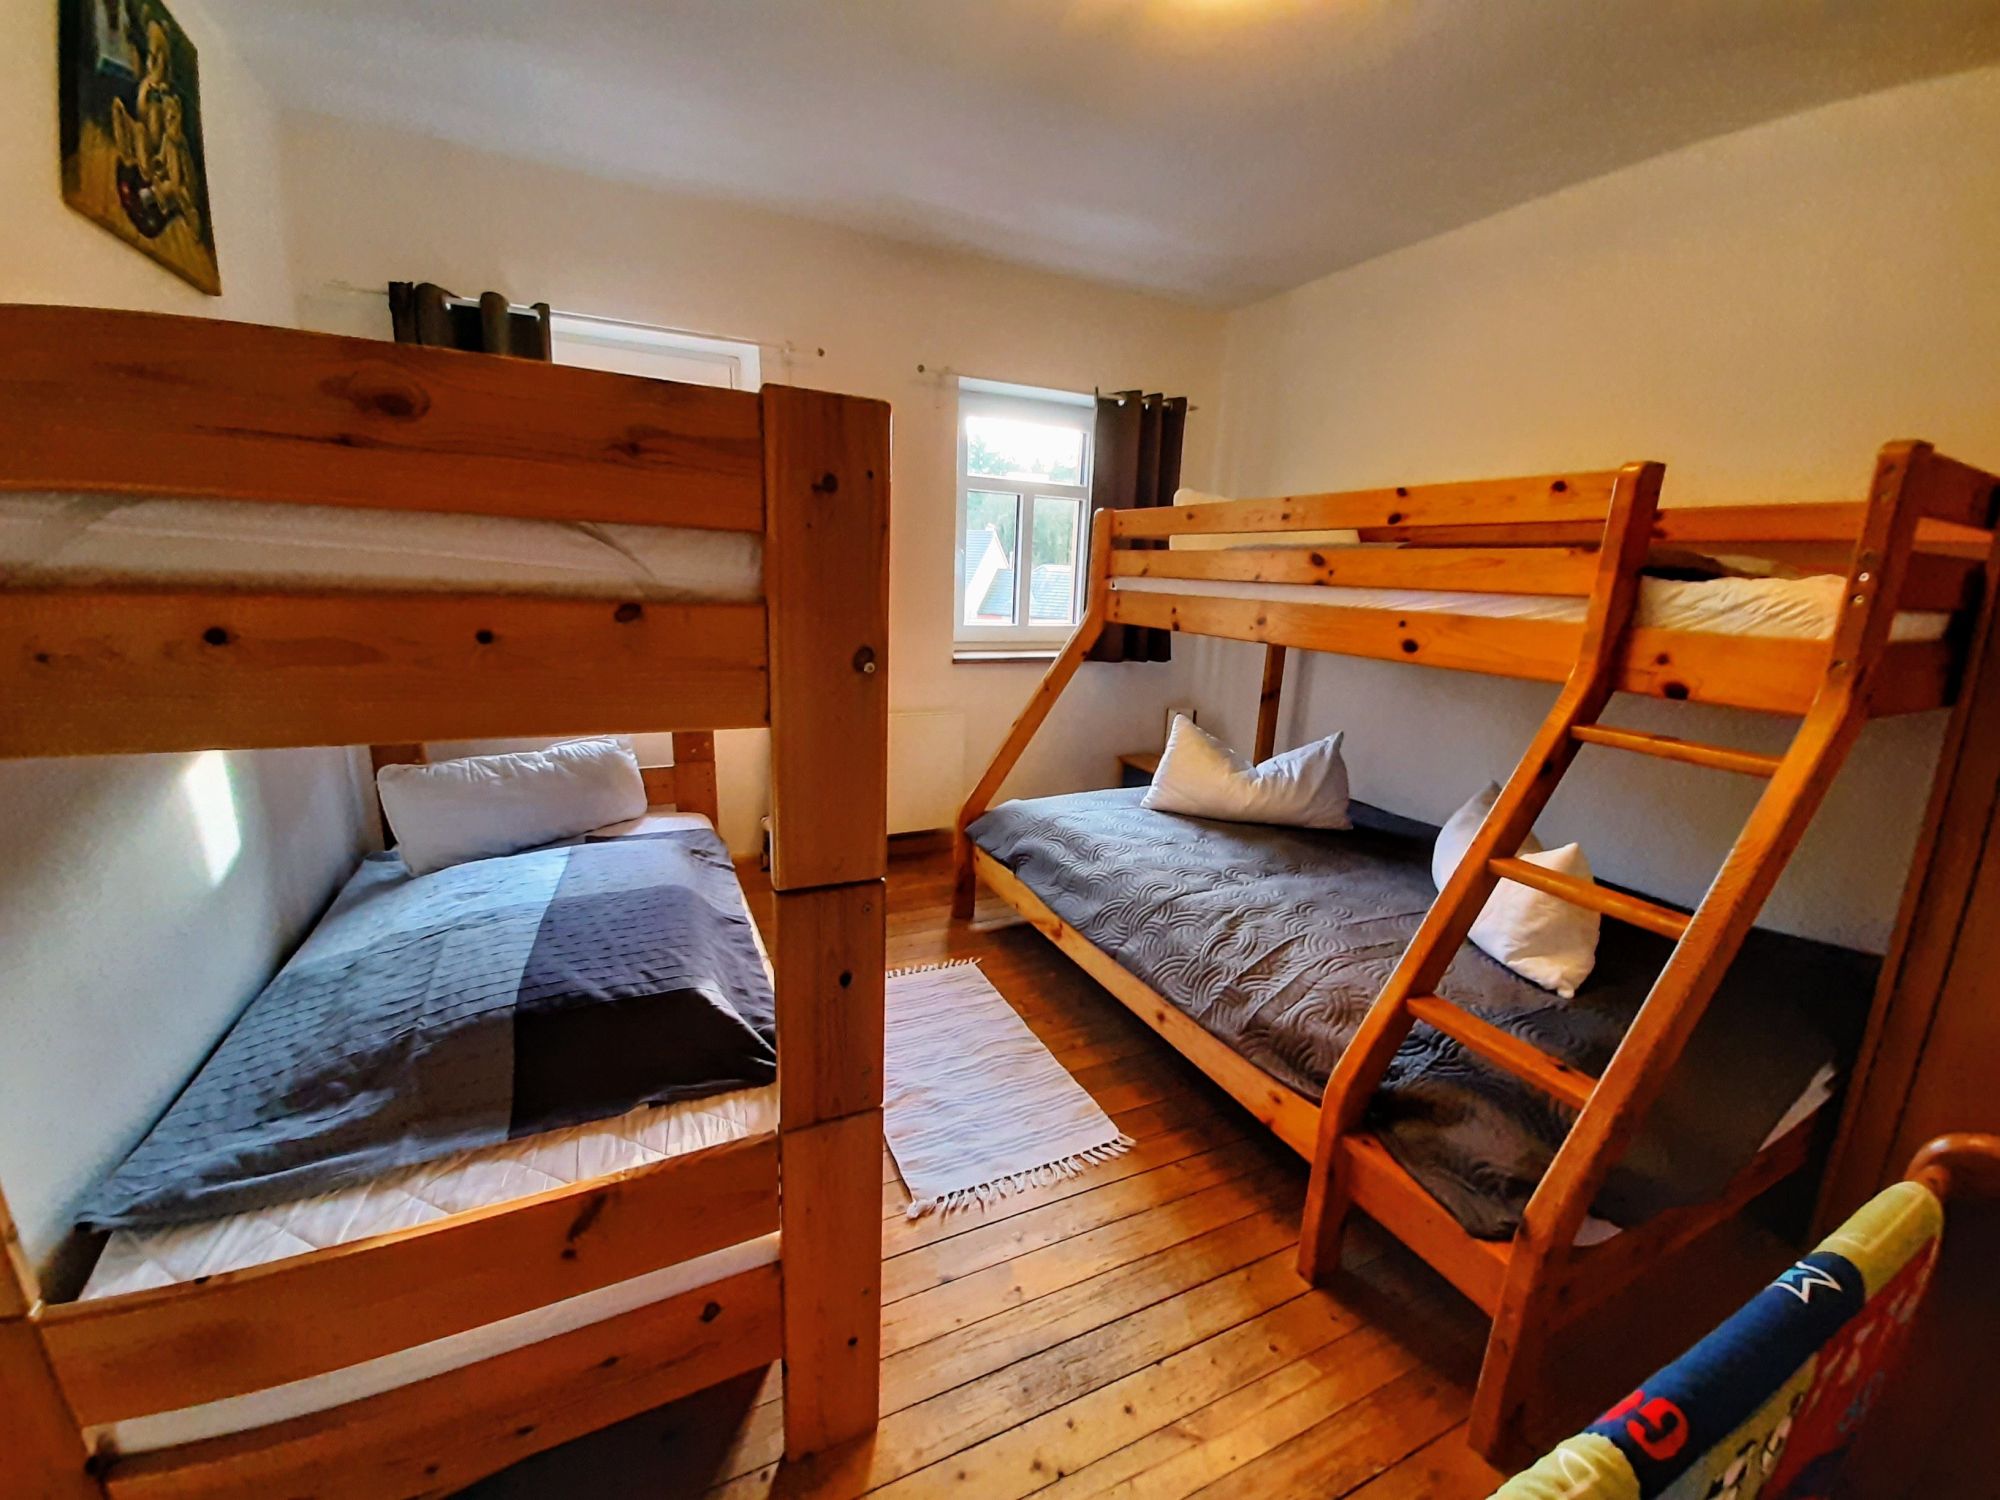 Schlafzimmer Neuerburg mit Katamaran Hochbett im 1 OG für 3 Gäste